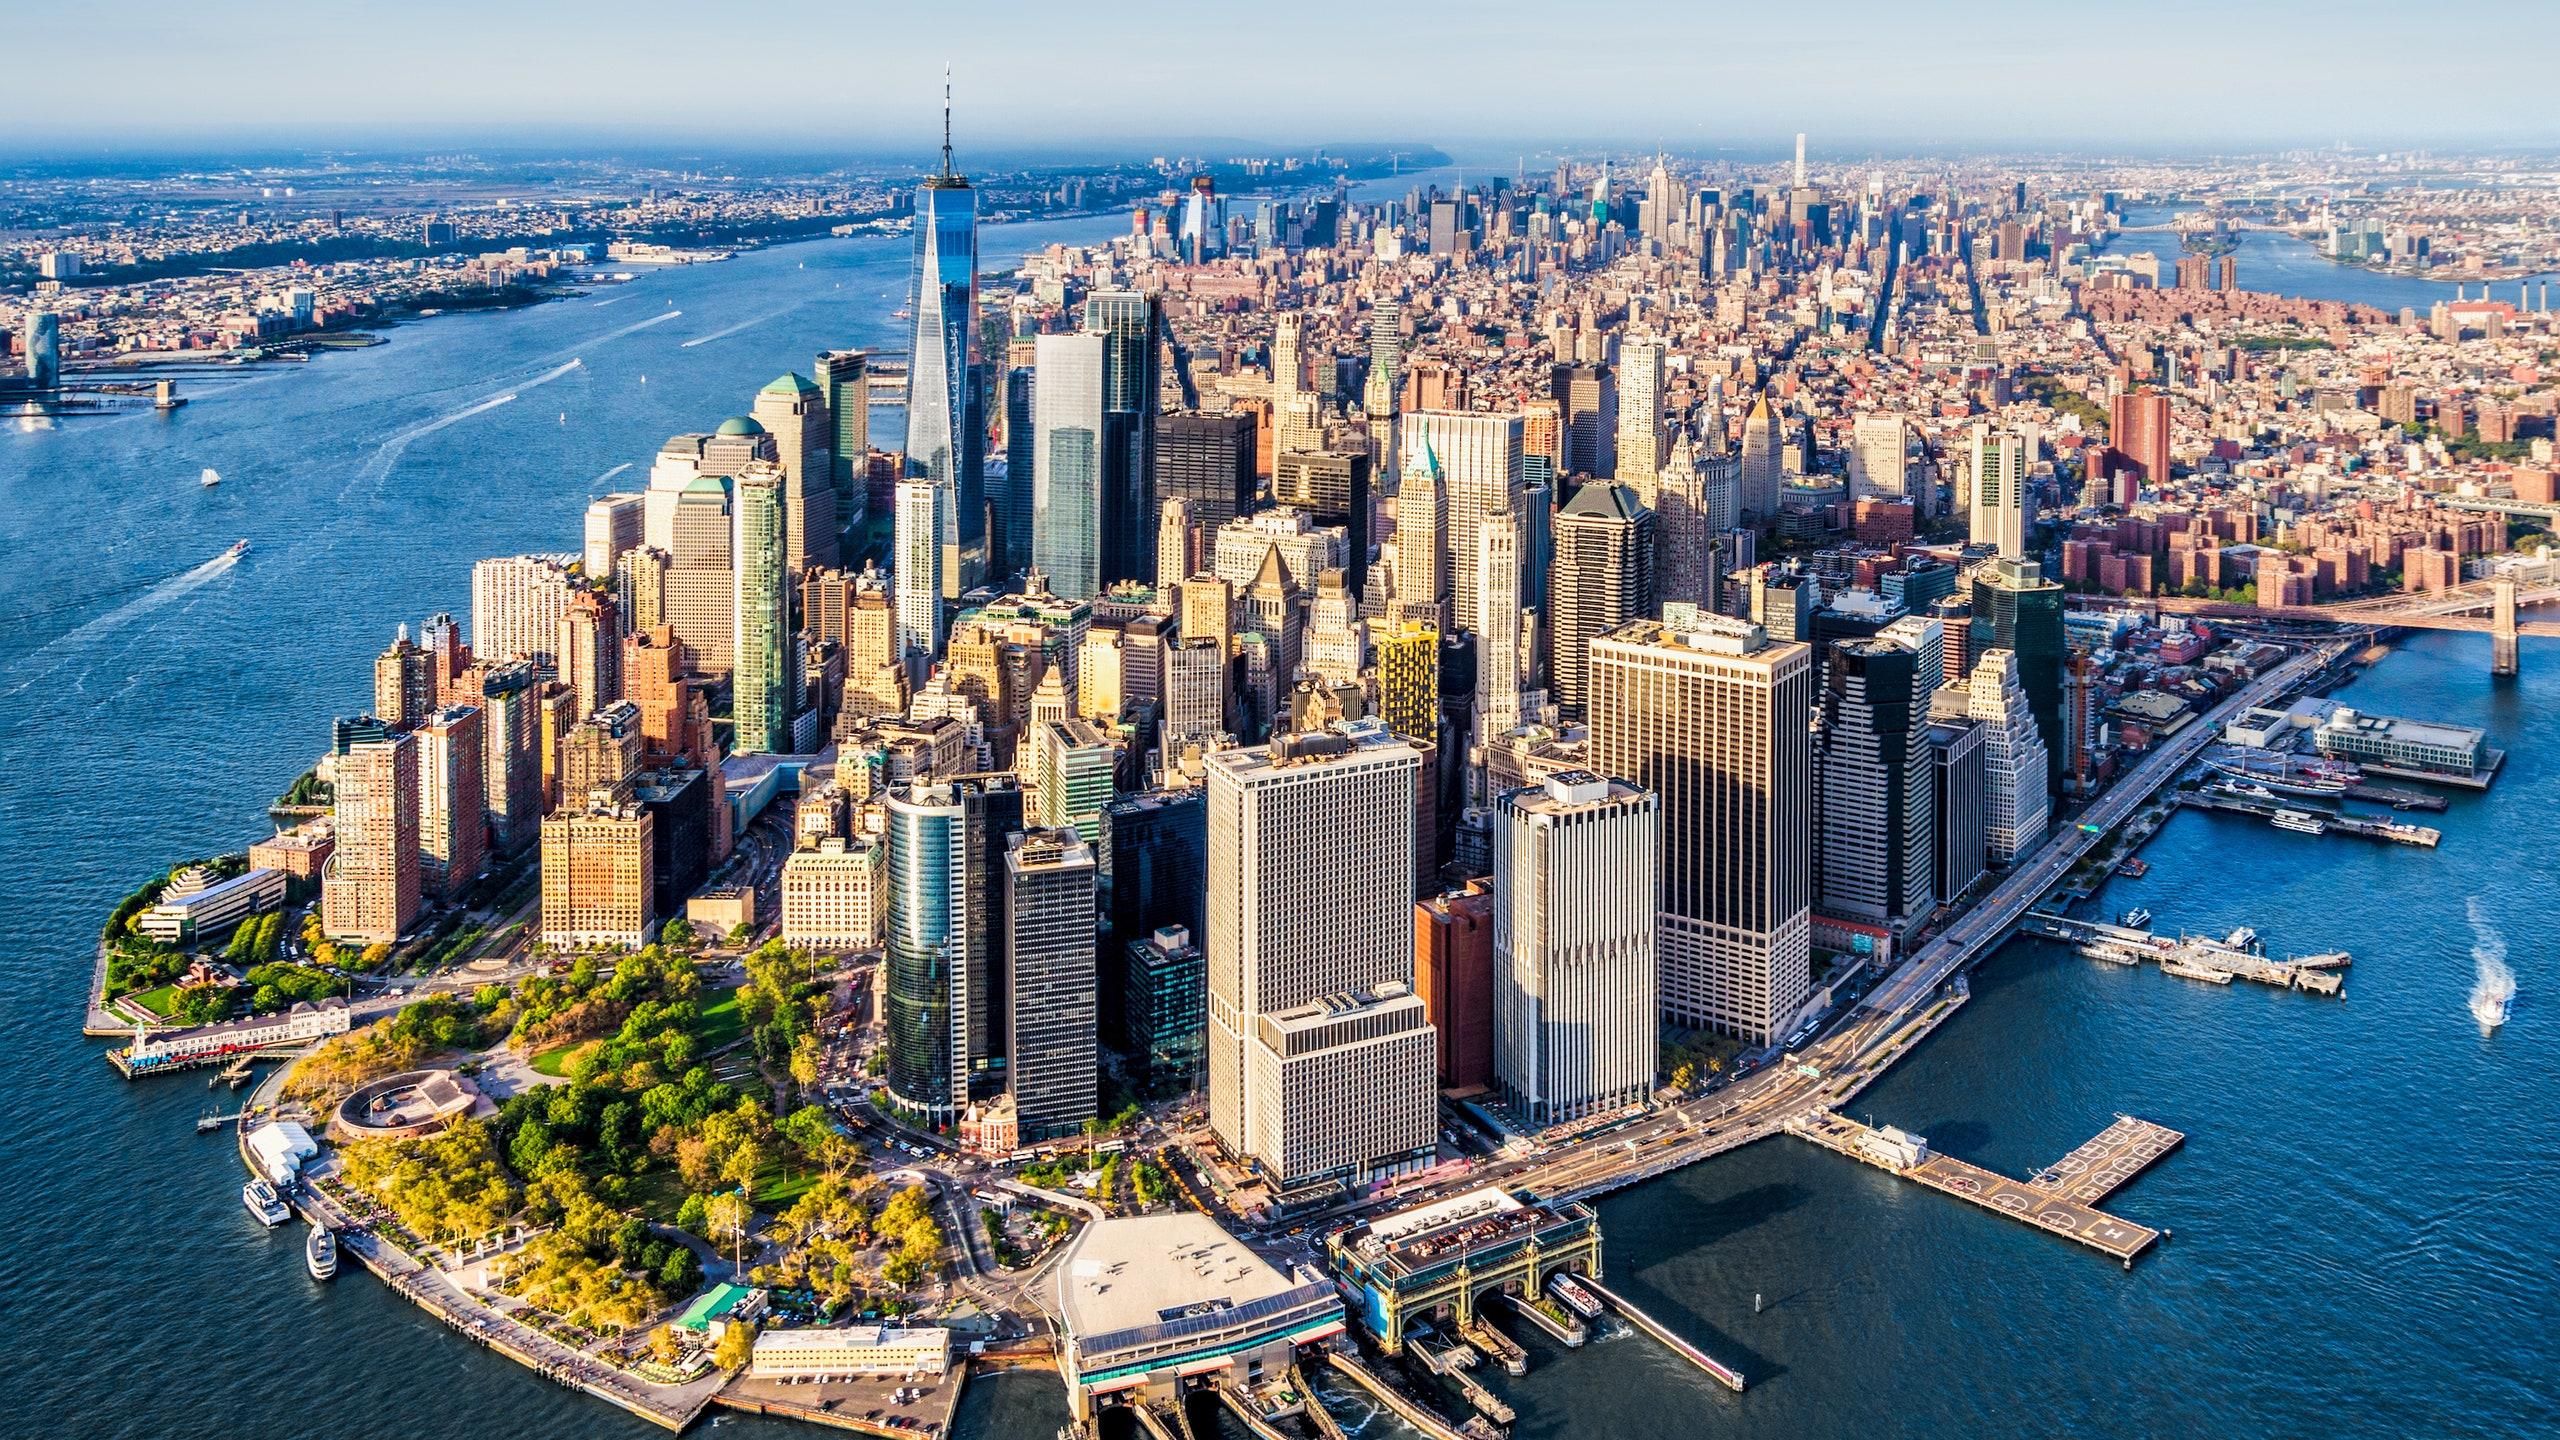 纽约:世界之都new york city纽约new york是北美最大,人口最多的城市